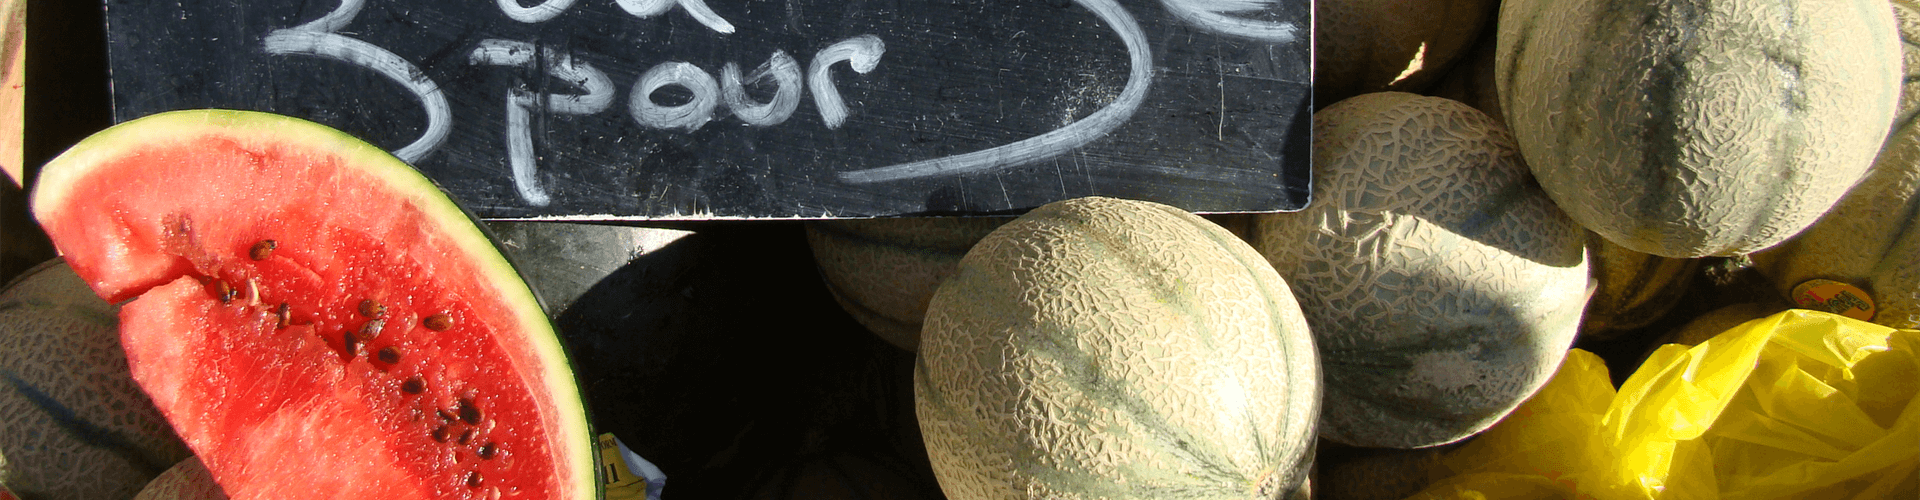 Streekproducten uit Poitou Charentes: meloenen op de markt